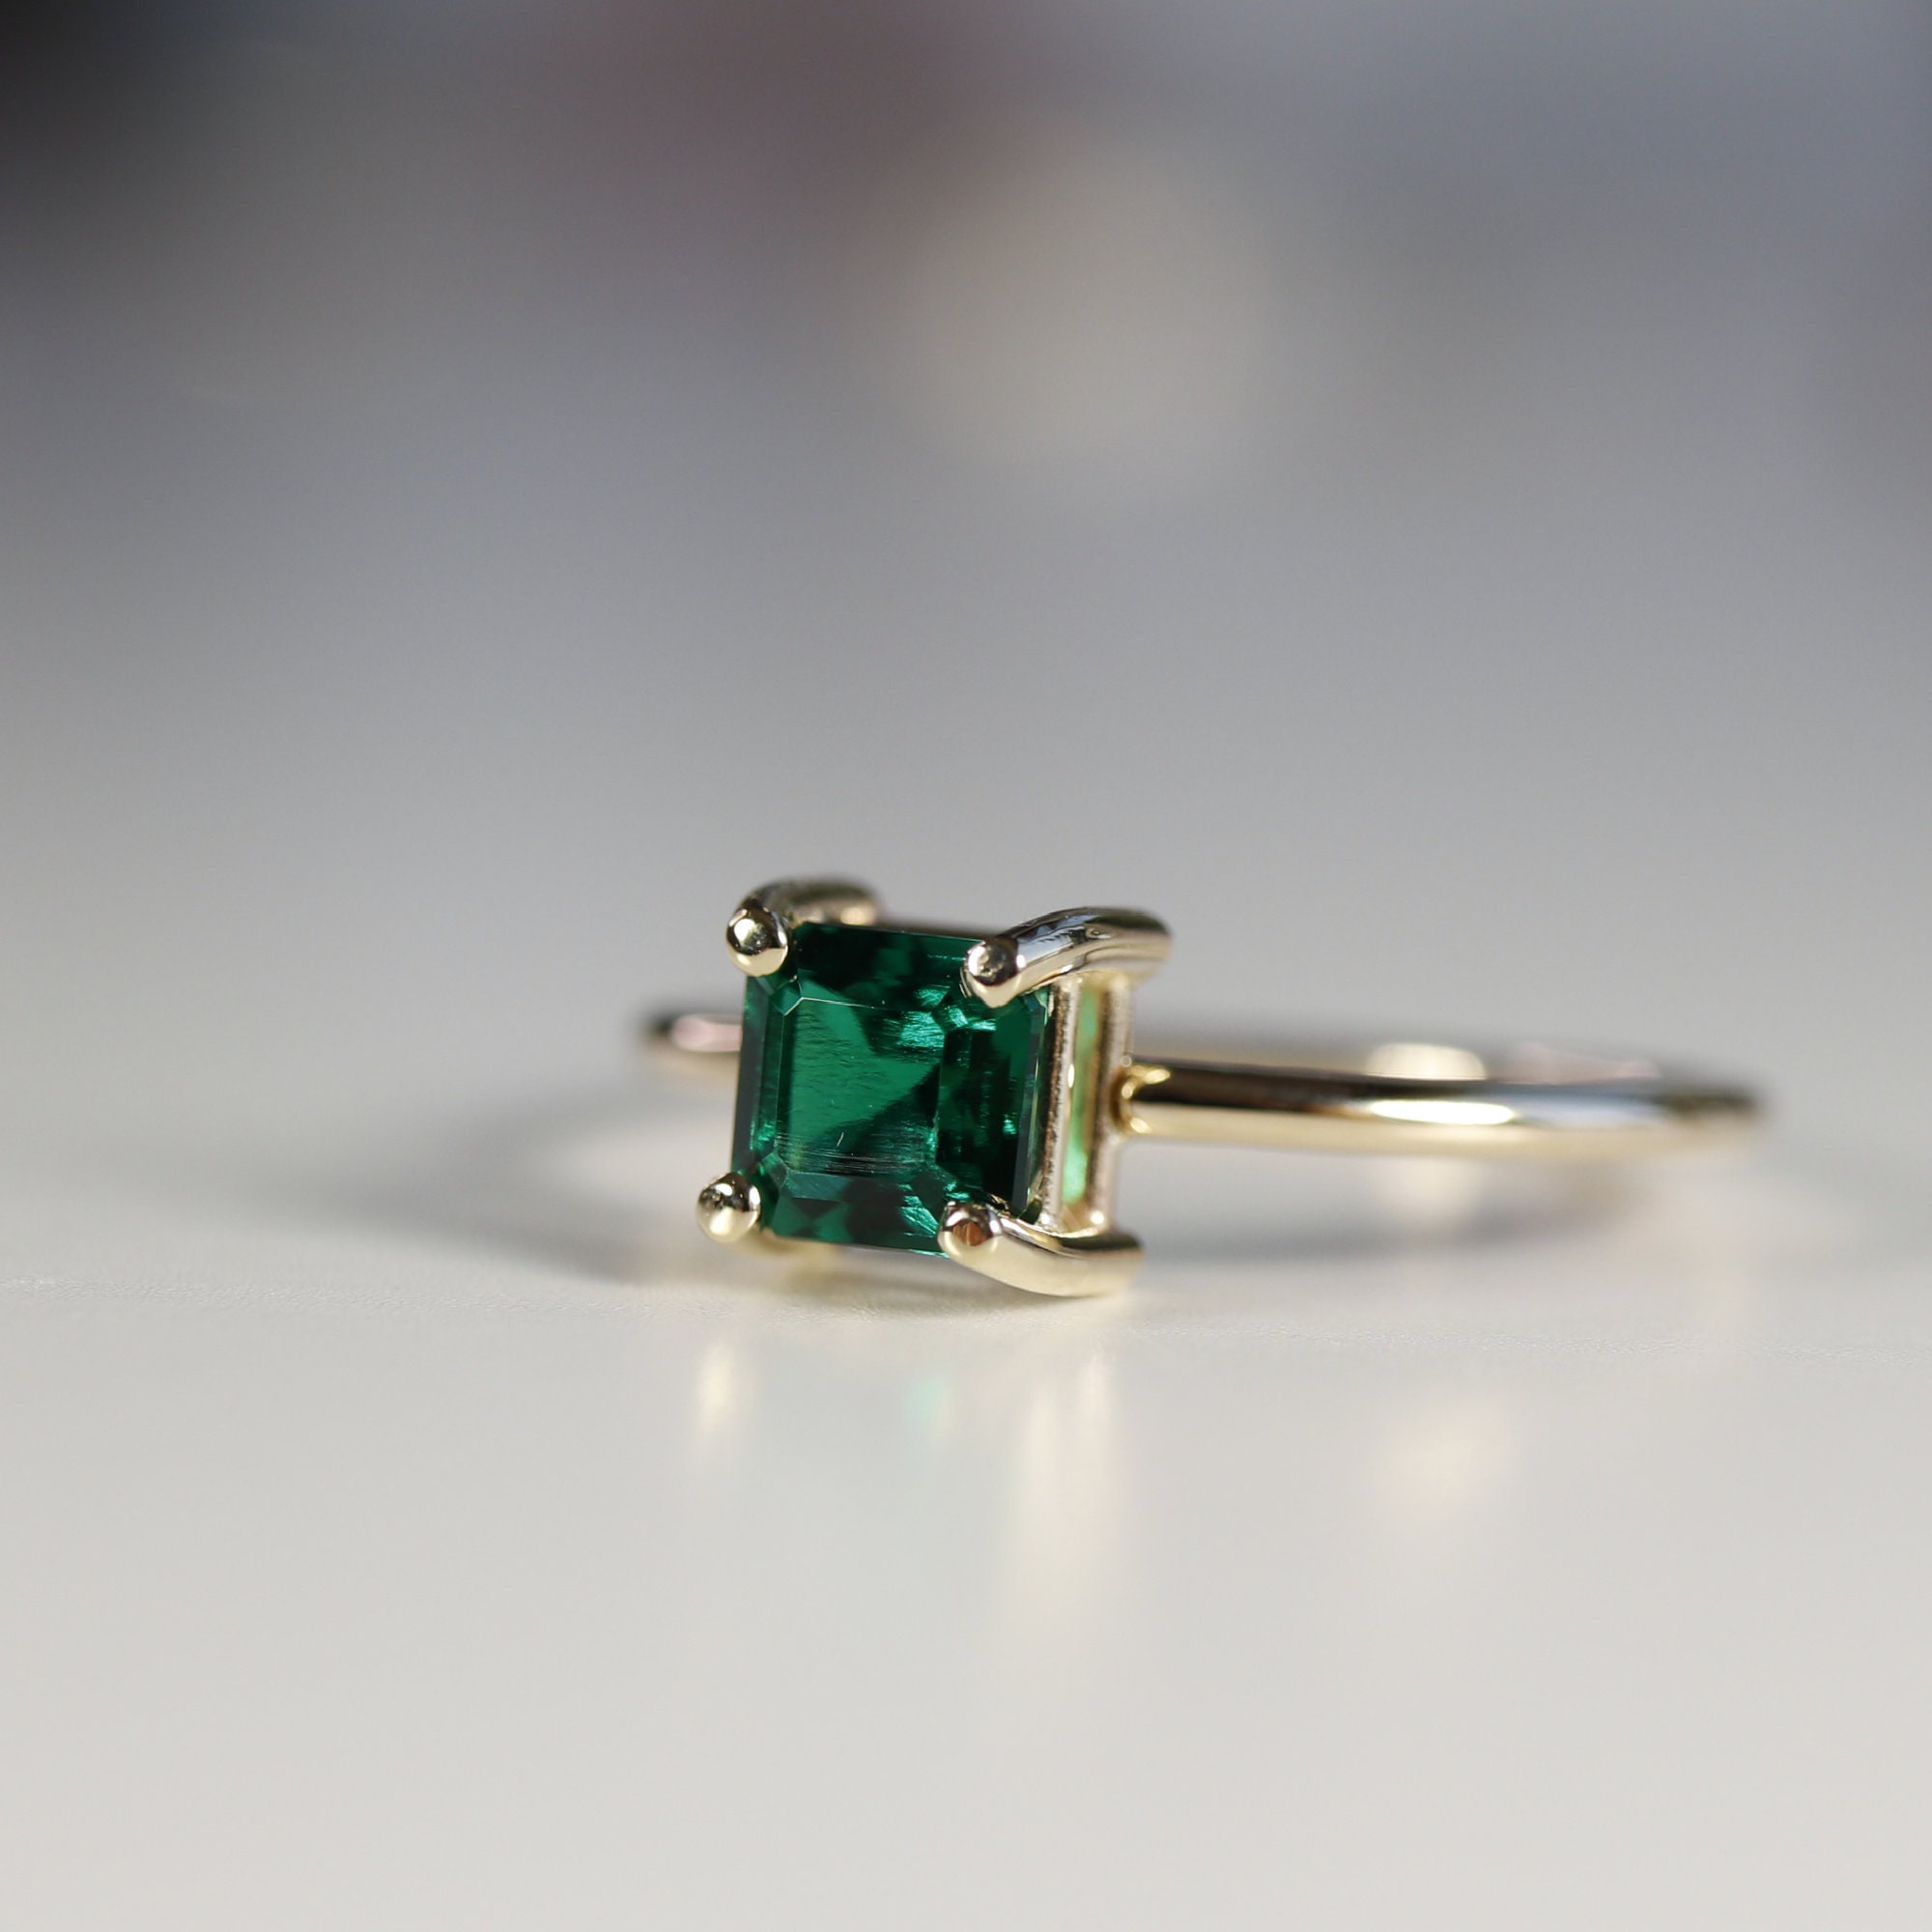 14k Gold Asscher Cut Emerald Ring Stacking Emerald Ring Art | Etsy